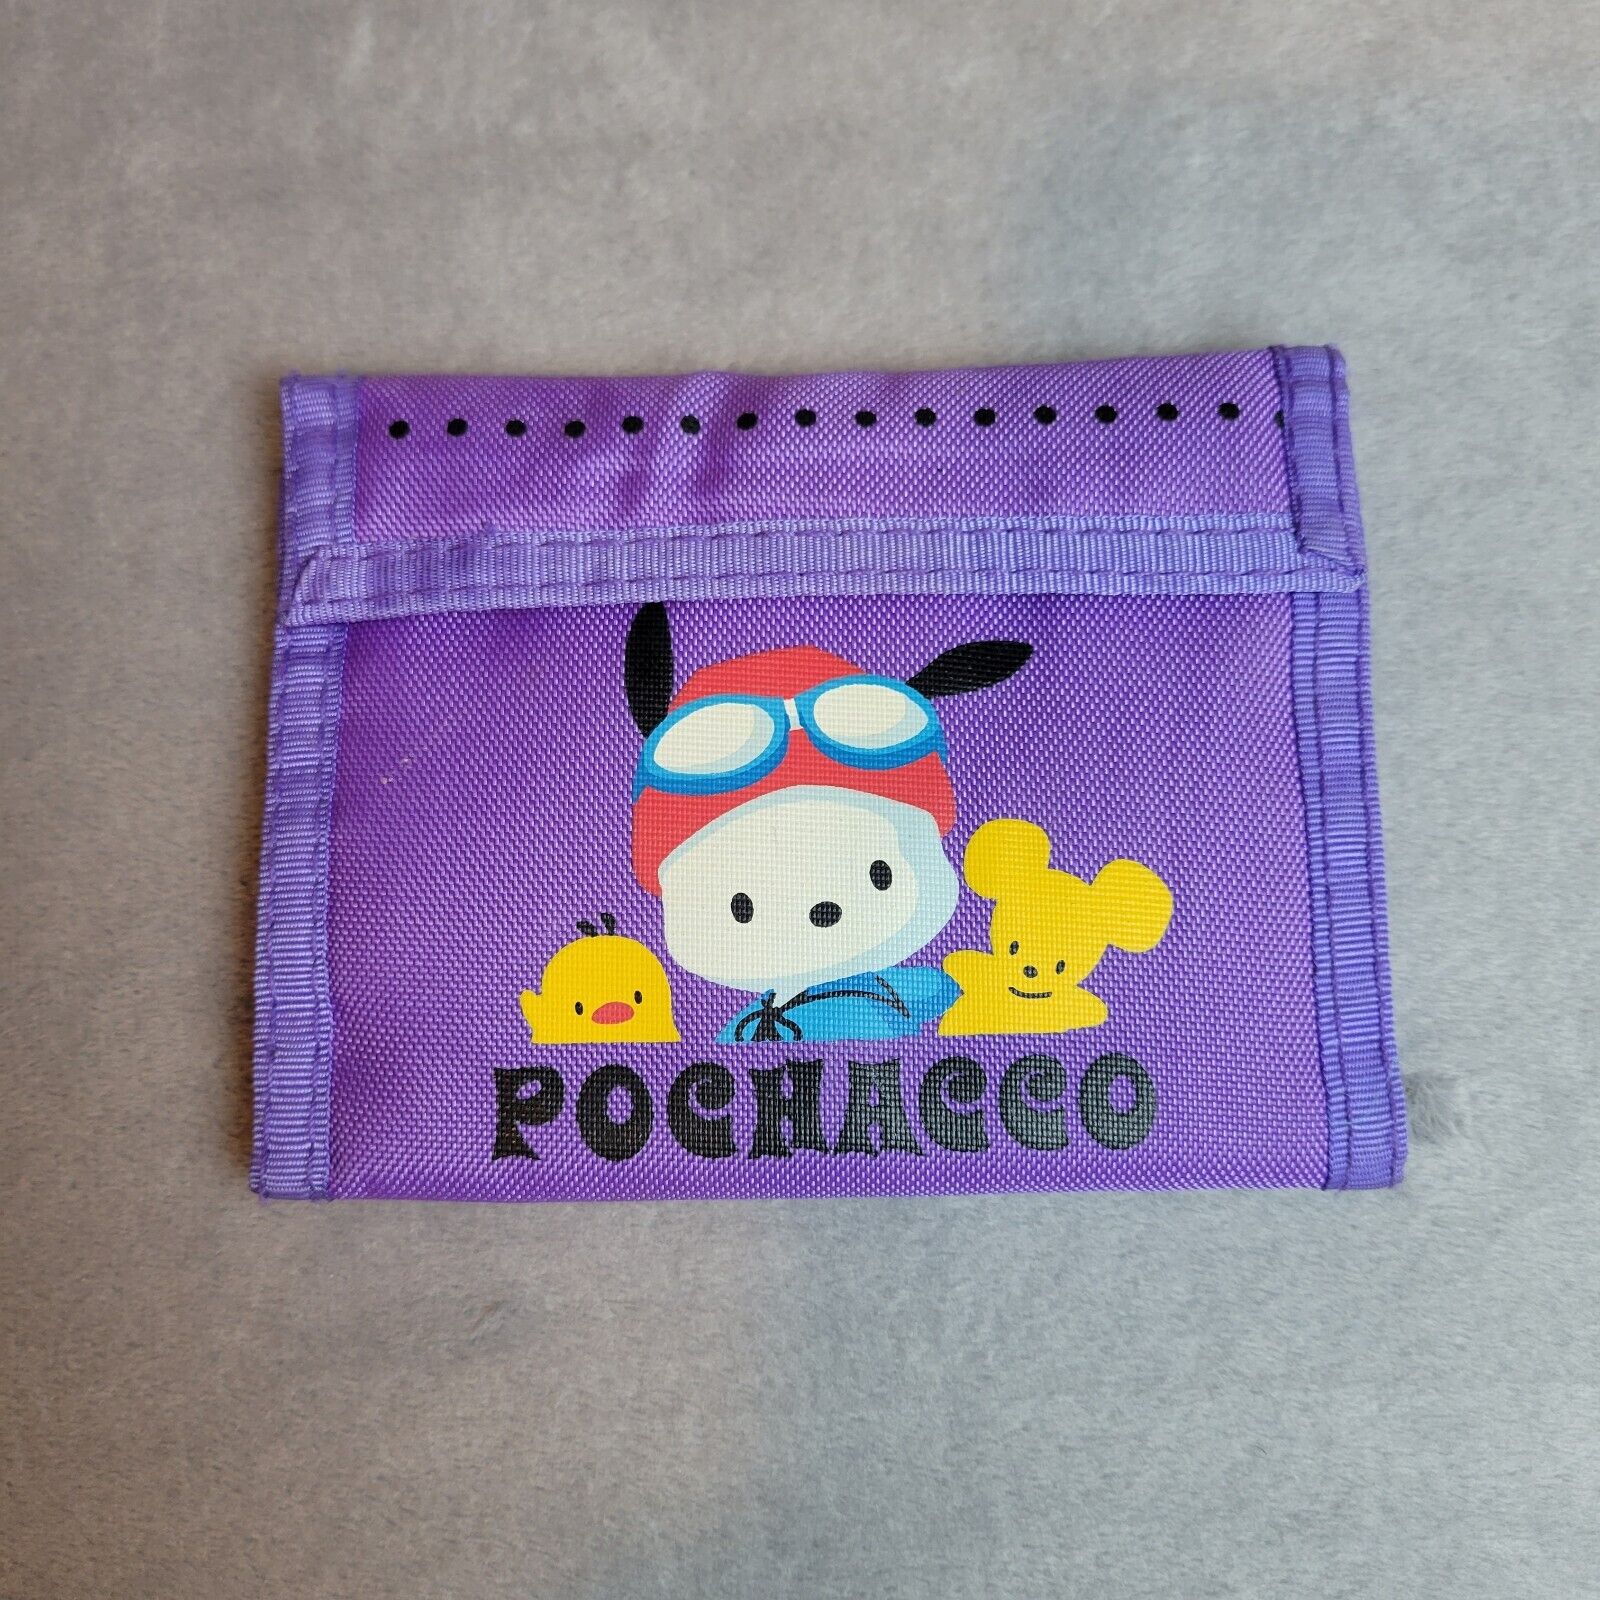 Vintage POCHACCO Wallet Trifold Purple 1999 Sanrio